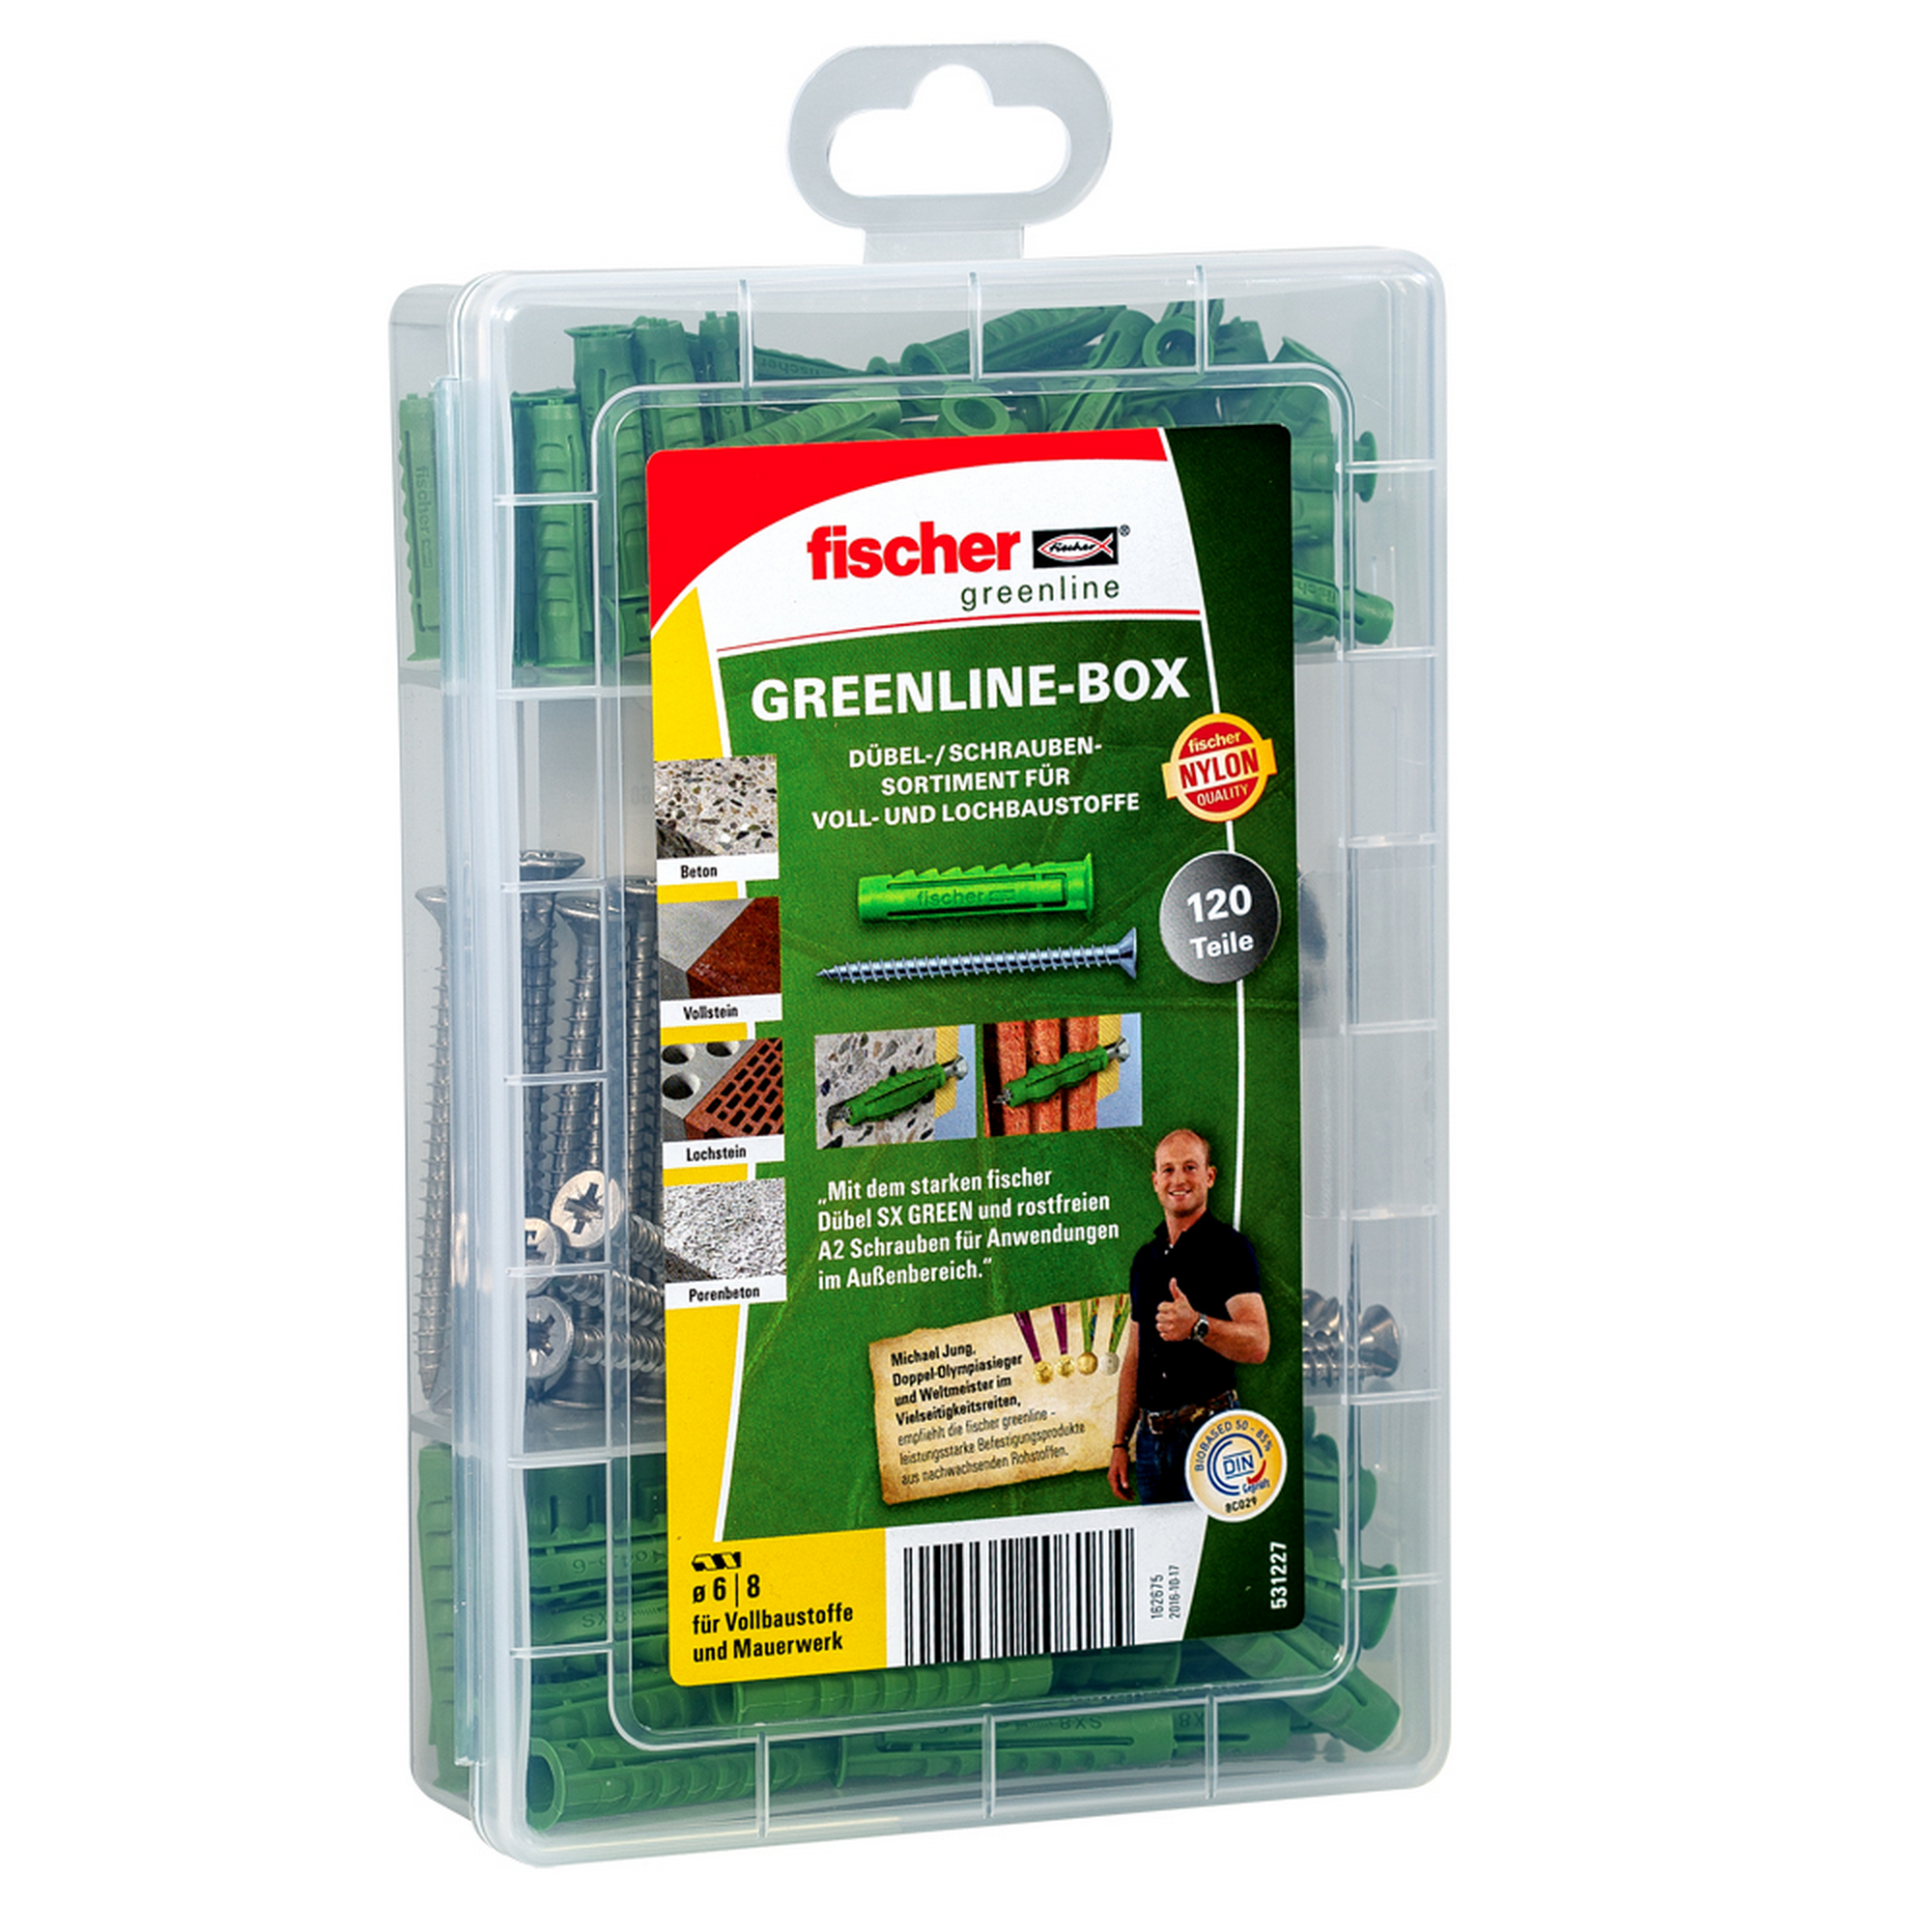 Greenline Spreizdübel- und Schrauben-Set 'Meister-Box' 120-teilig + product picture